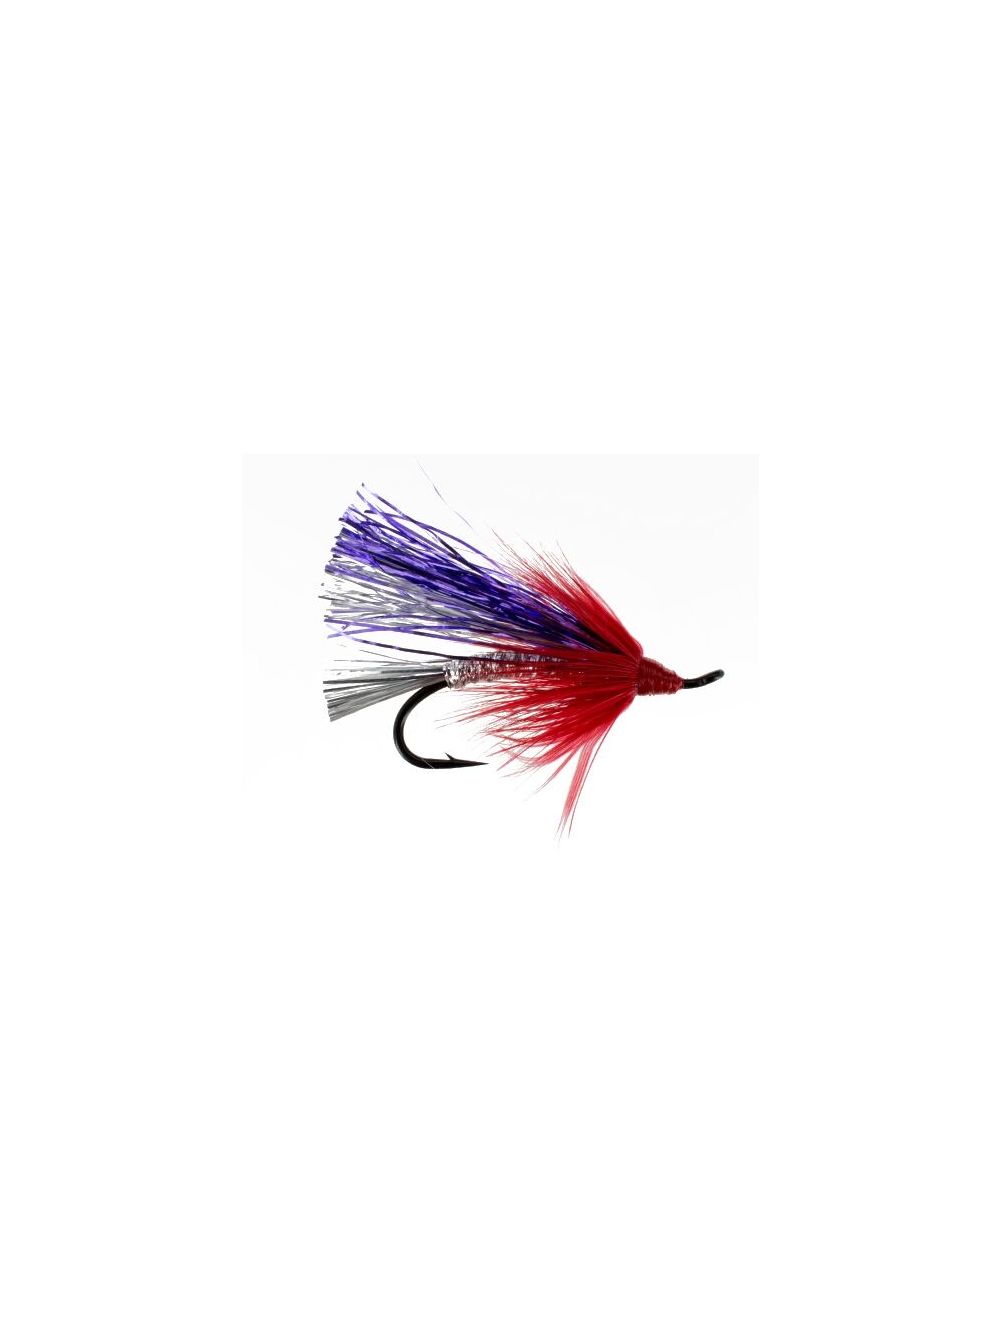 https://eadn-wc02-1020161.nxedge.io/cdn/media/catalog/product/cache/32b930e20bfef0c9badd7ee253a86131/f/l/flash-fly-fly-fishing-flies-salmon--steelhead_preview.jpeg